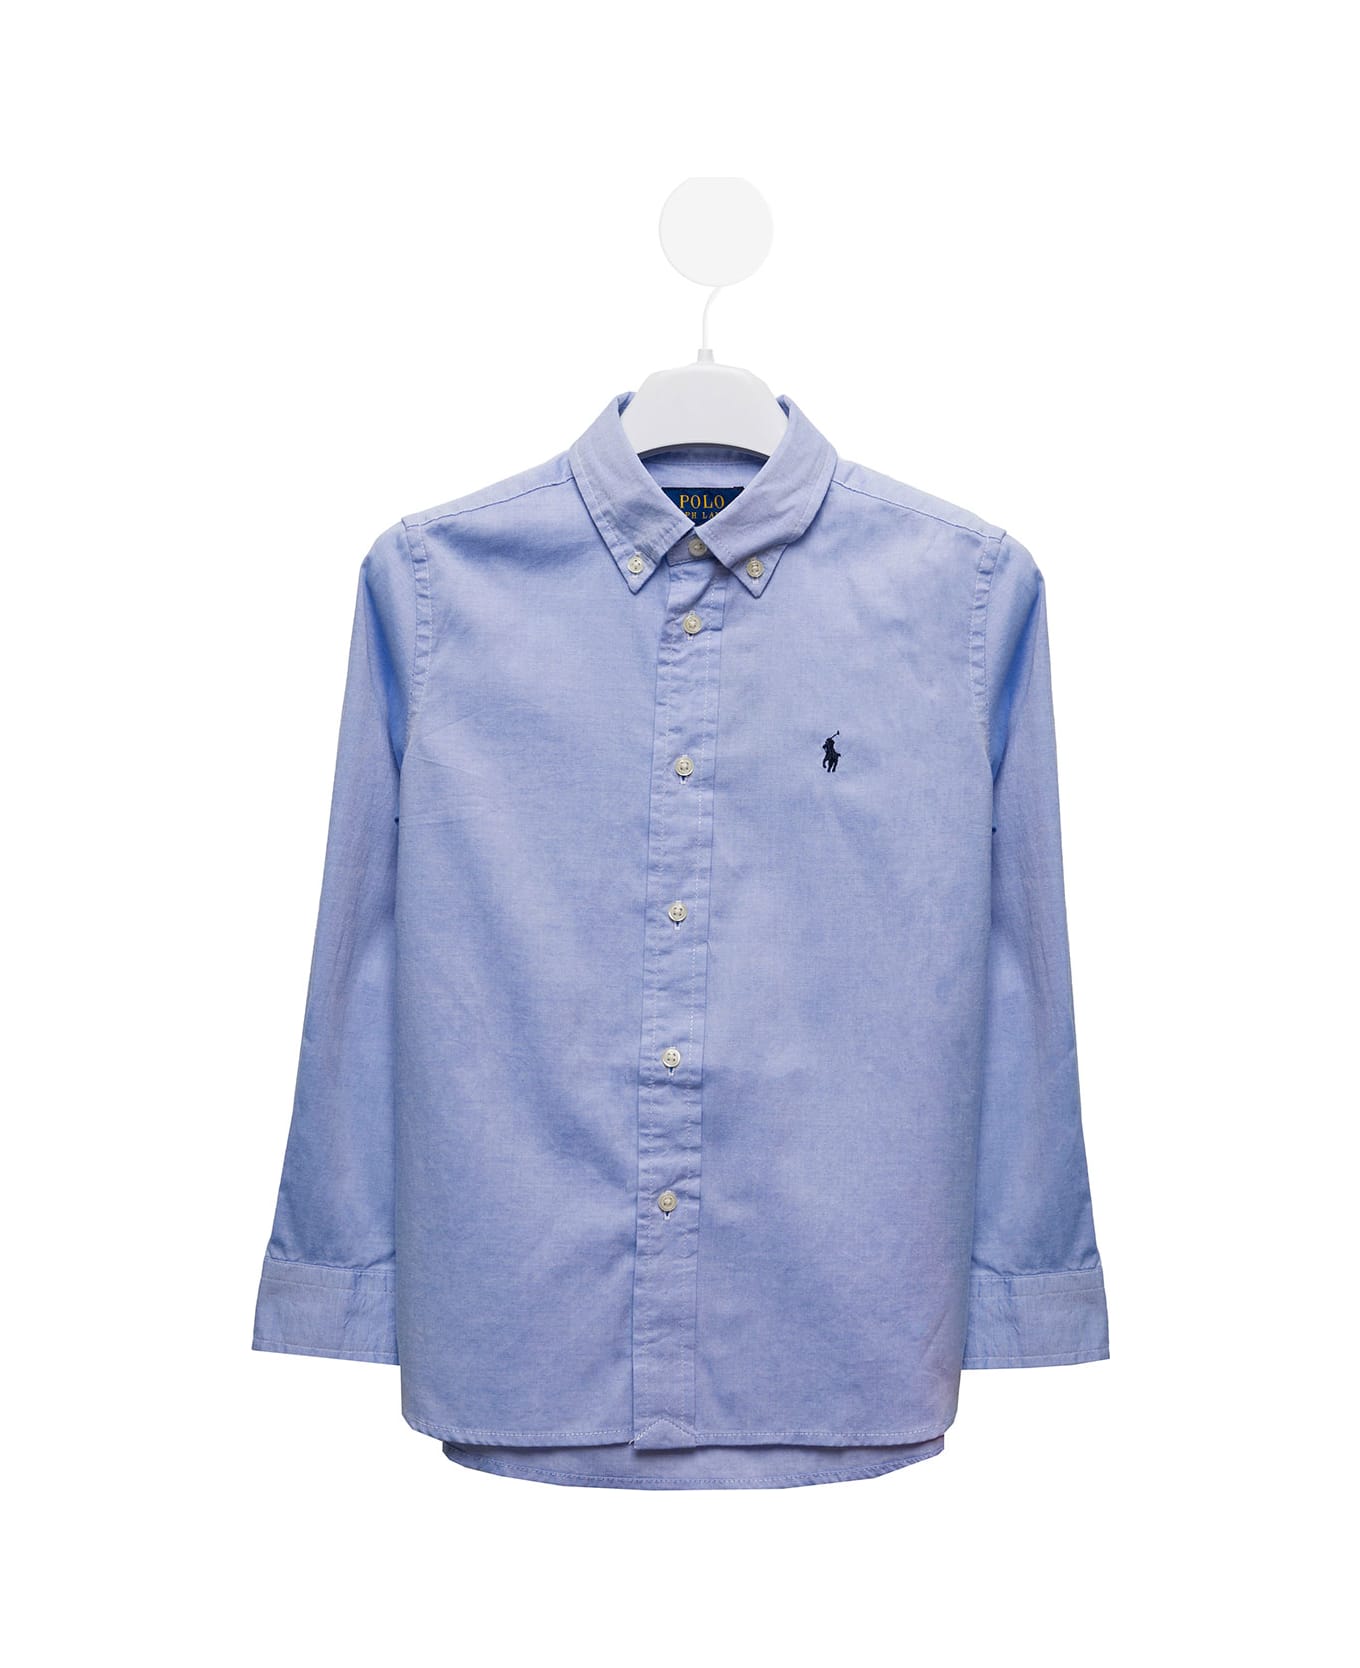 Ralph Lauren Light Blue Cotton Poplin Shirt With Logo Kids Boy - Blue